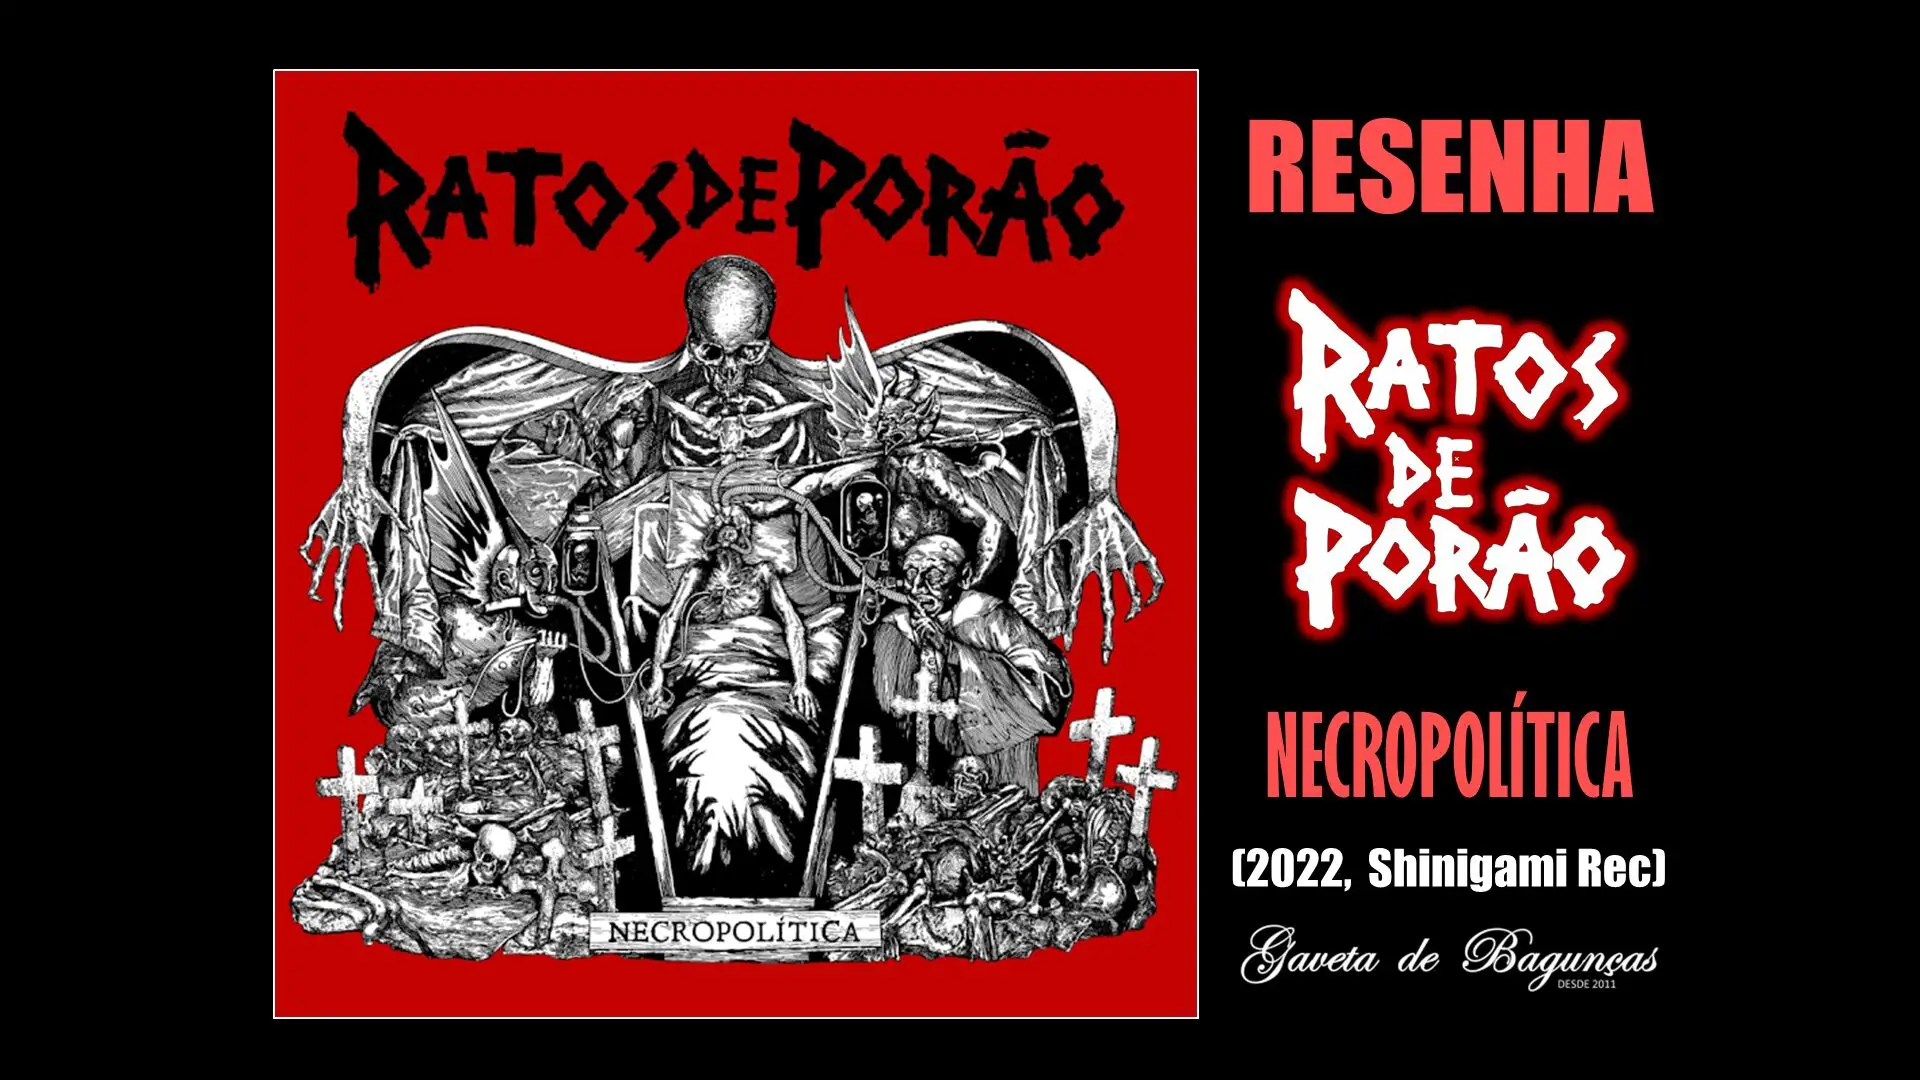 "Necropolítica" é o primeiro disco do Ratos de Porão desde 2014, mas tão engajado e pertinente nas críticas sociais ácidas ao bolsonarismo, que soa como uma parte 2 do atemporal e clássico "Brasil", de 1989.